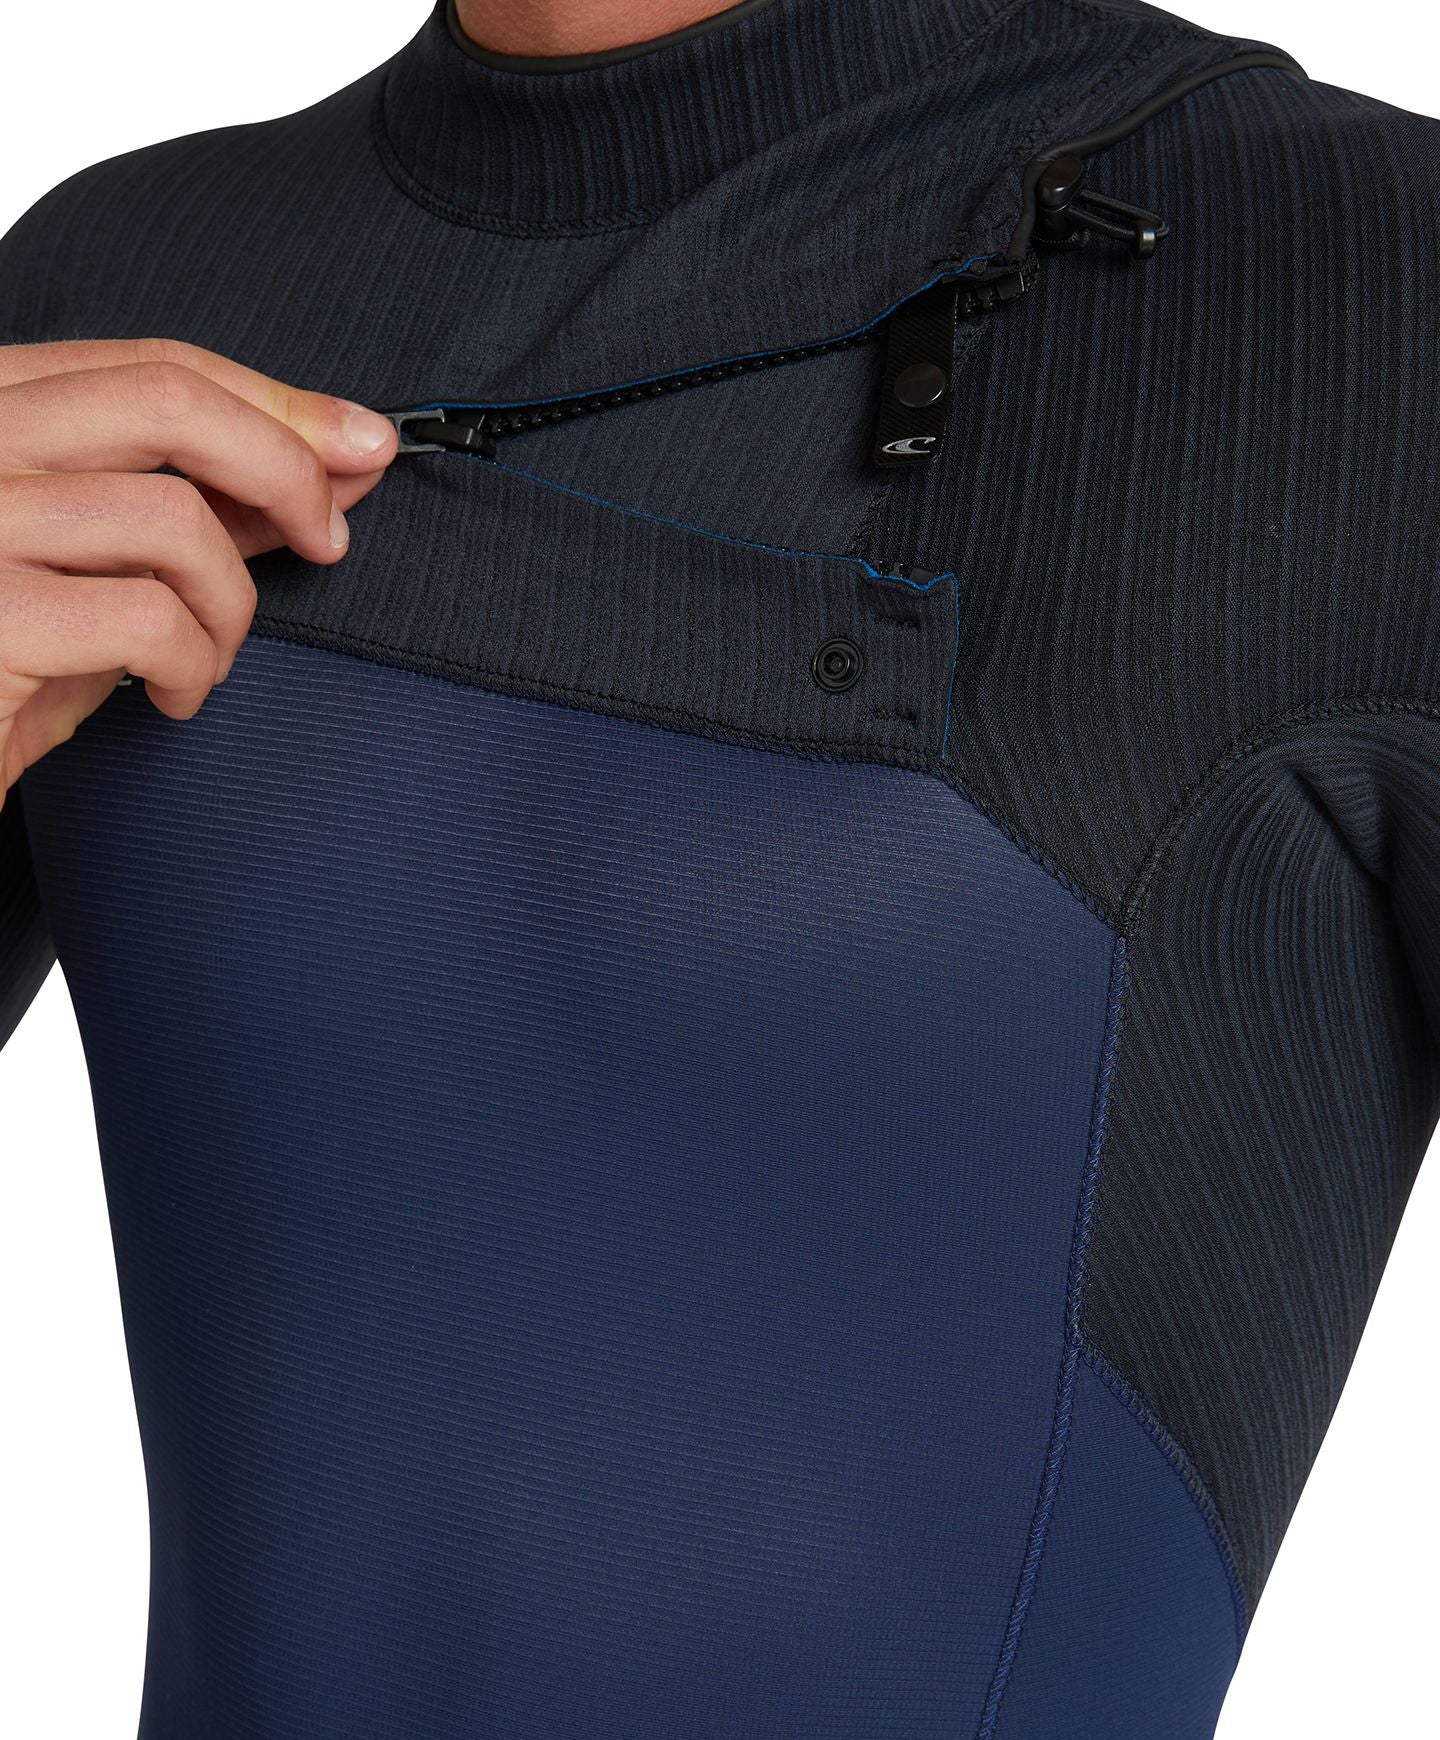 Hyperfreak 2mm Long Sleeve Springsuit Chest Zip Wetsuit - Navy